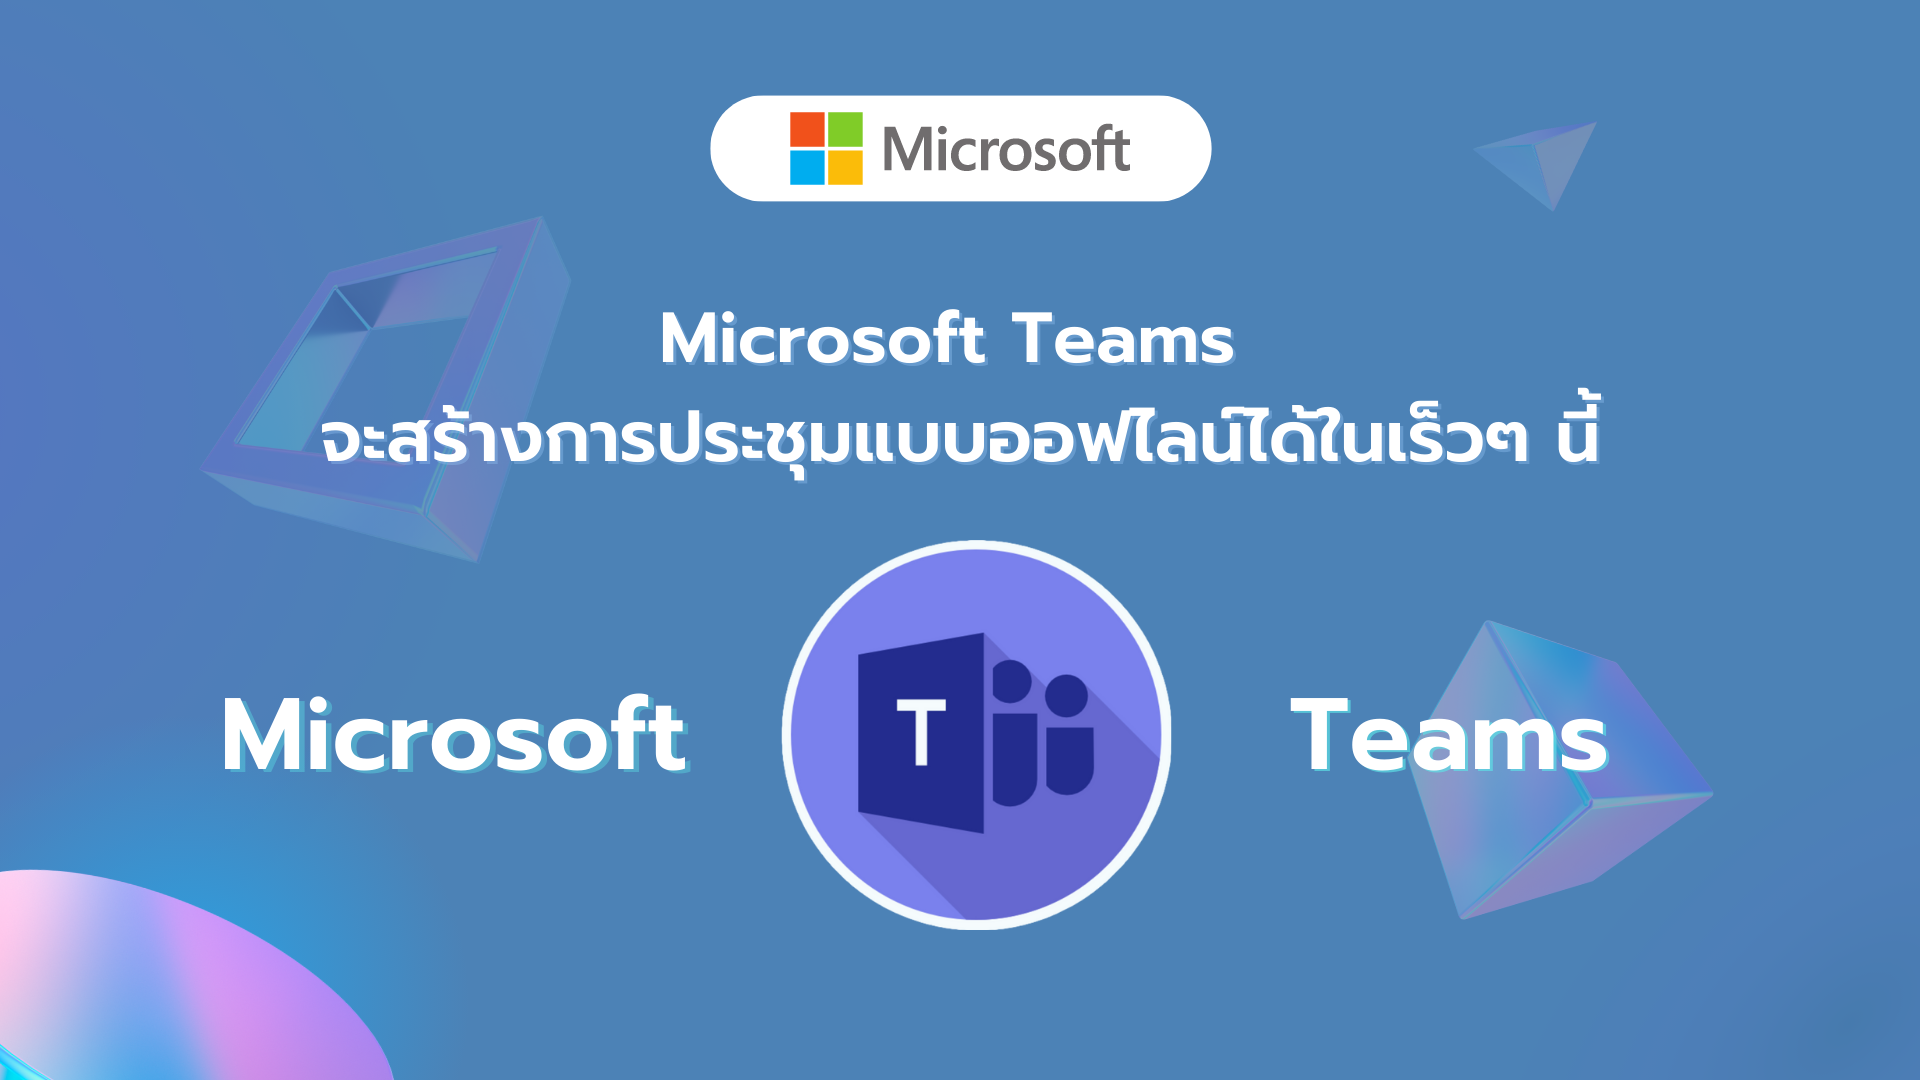 Microsoft Teams จะสามารถสร้างการประชุมแบบออฟไลน์ได้ในเร็วๆ นี้